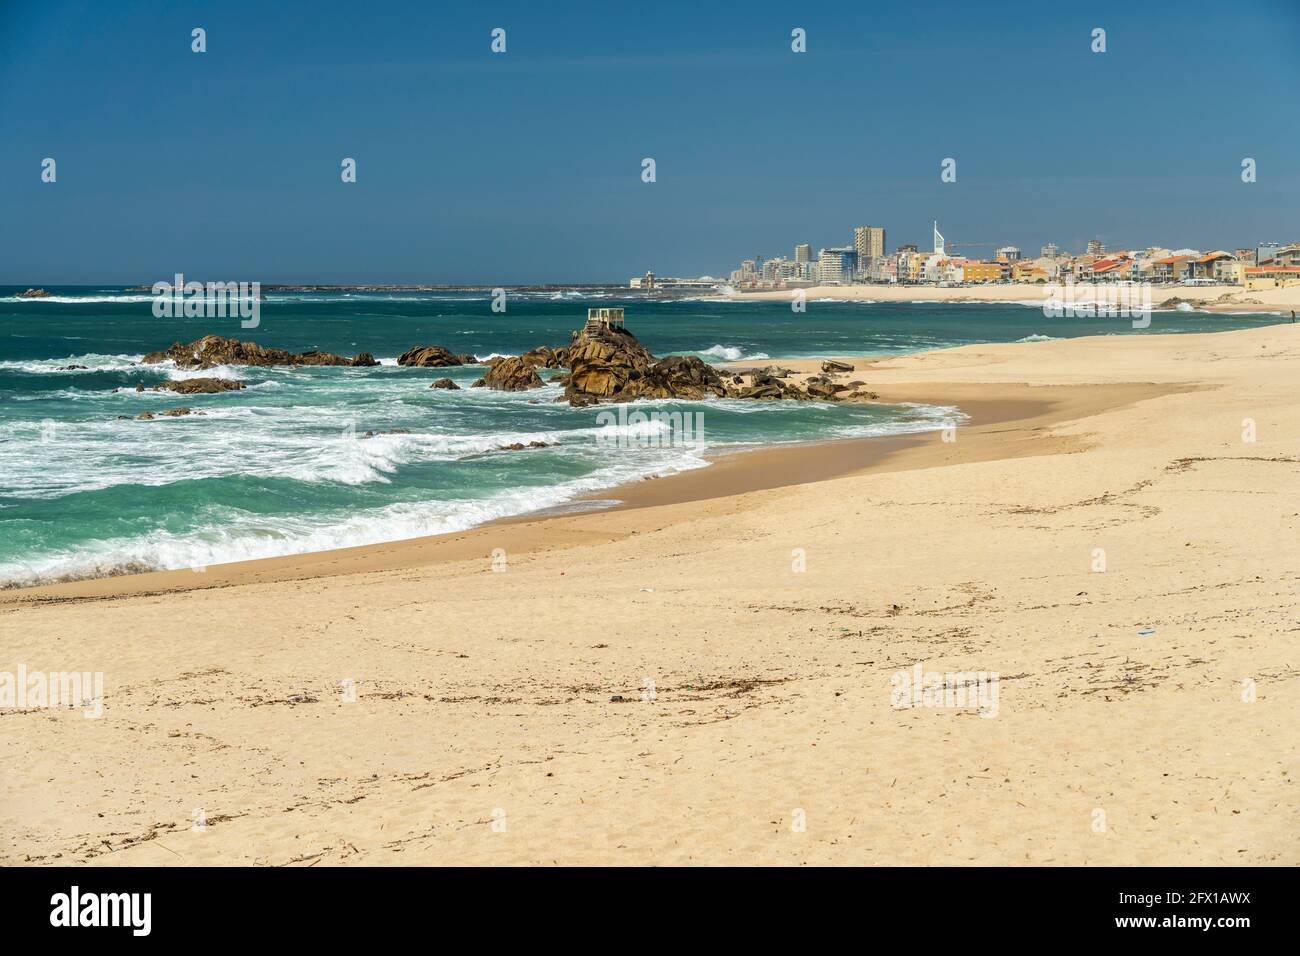 Der Strand Praia das Caxinas und Vila do Conde, Portugal, Europa   | Praia das Caxinas beach and Vila do Conde, Portugal, Europe Stock Photo